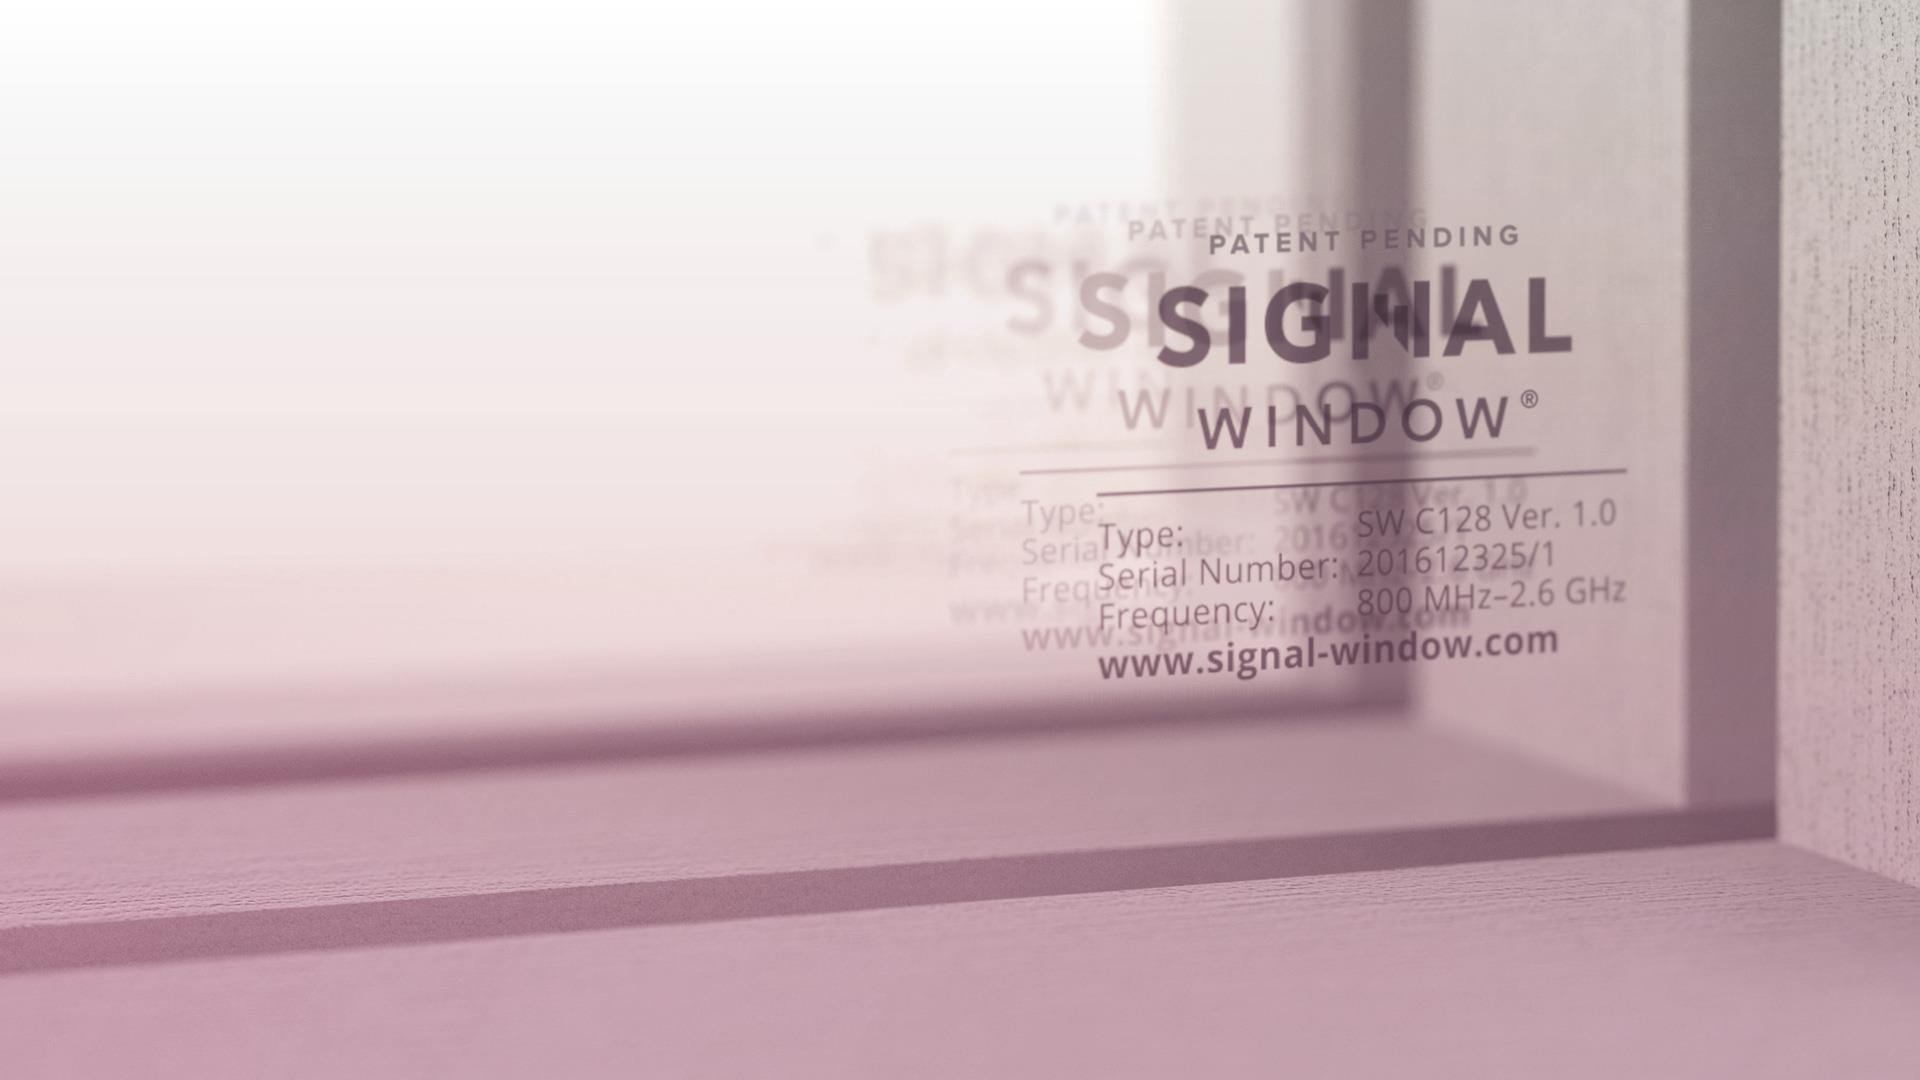 Lammin Signal Window Mahdollistaa puhelinsignaalin voimakkuuden moninkertaistumisen olosuhteista riippuen tavalliseen vastaavaan ikkunaan verrattuna. Toimii kaikkien operaattoreiden liittymillä.